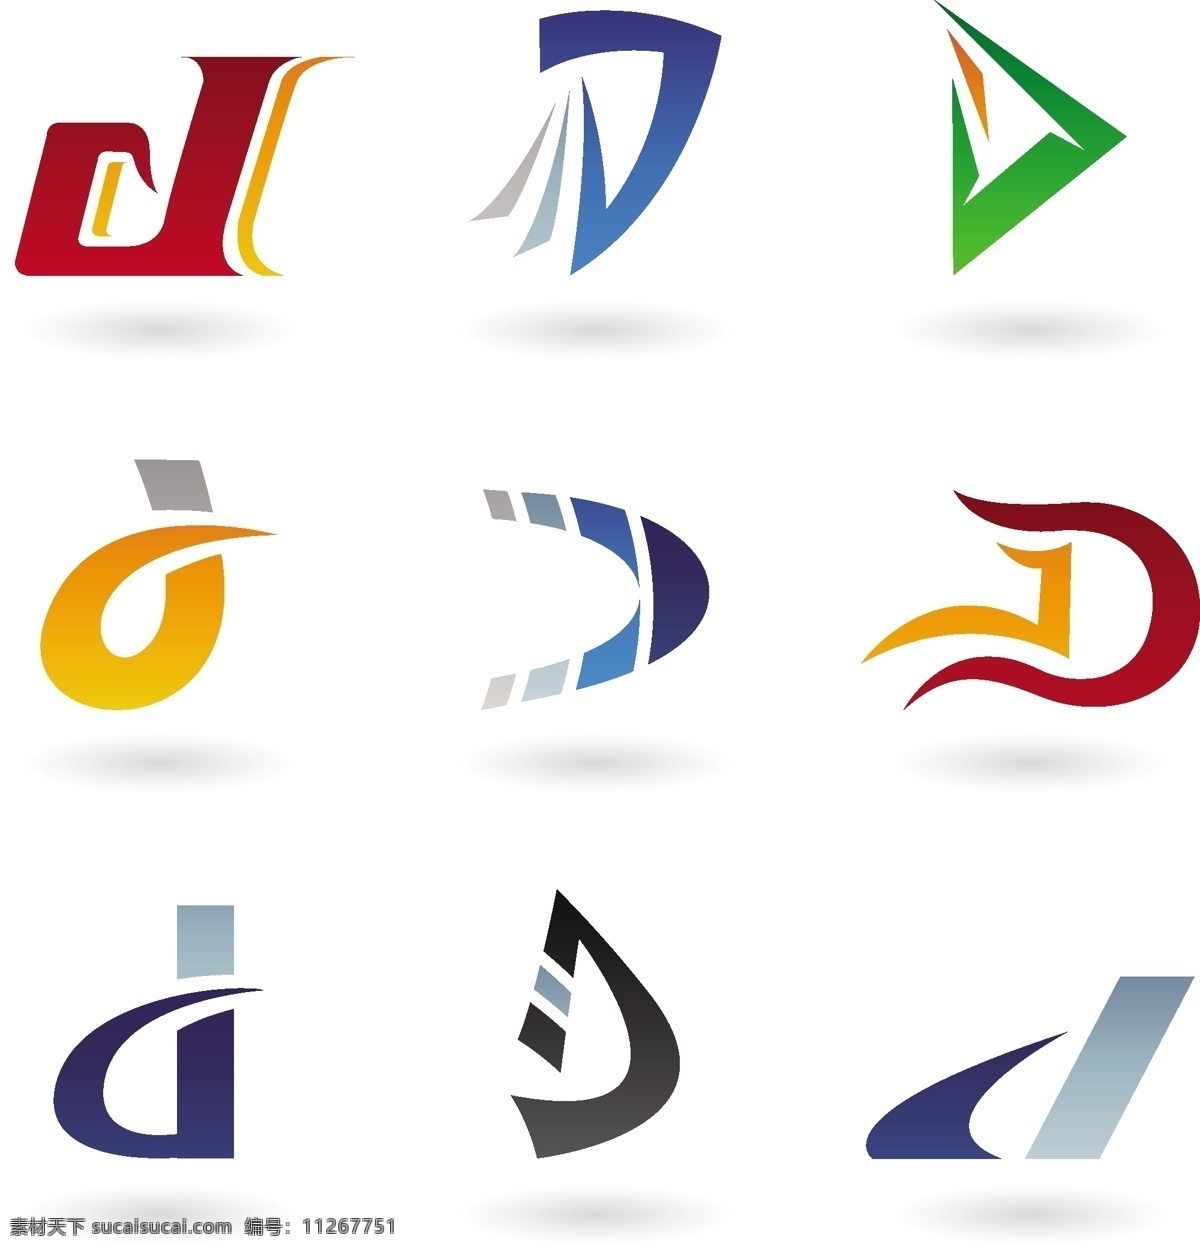 字母d 字母设计 logo 字母logo 手绘字母 彩色字母 26个英文字 大小写 字母标识 拼音 创意字母 字母 英文 英文字母 26个字母 立体字母 卡通字母 动物字母 数字 标点 符号 标点符号 卡通数字 立体数字 阿拉伯数字